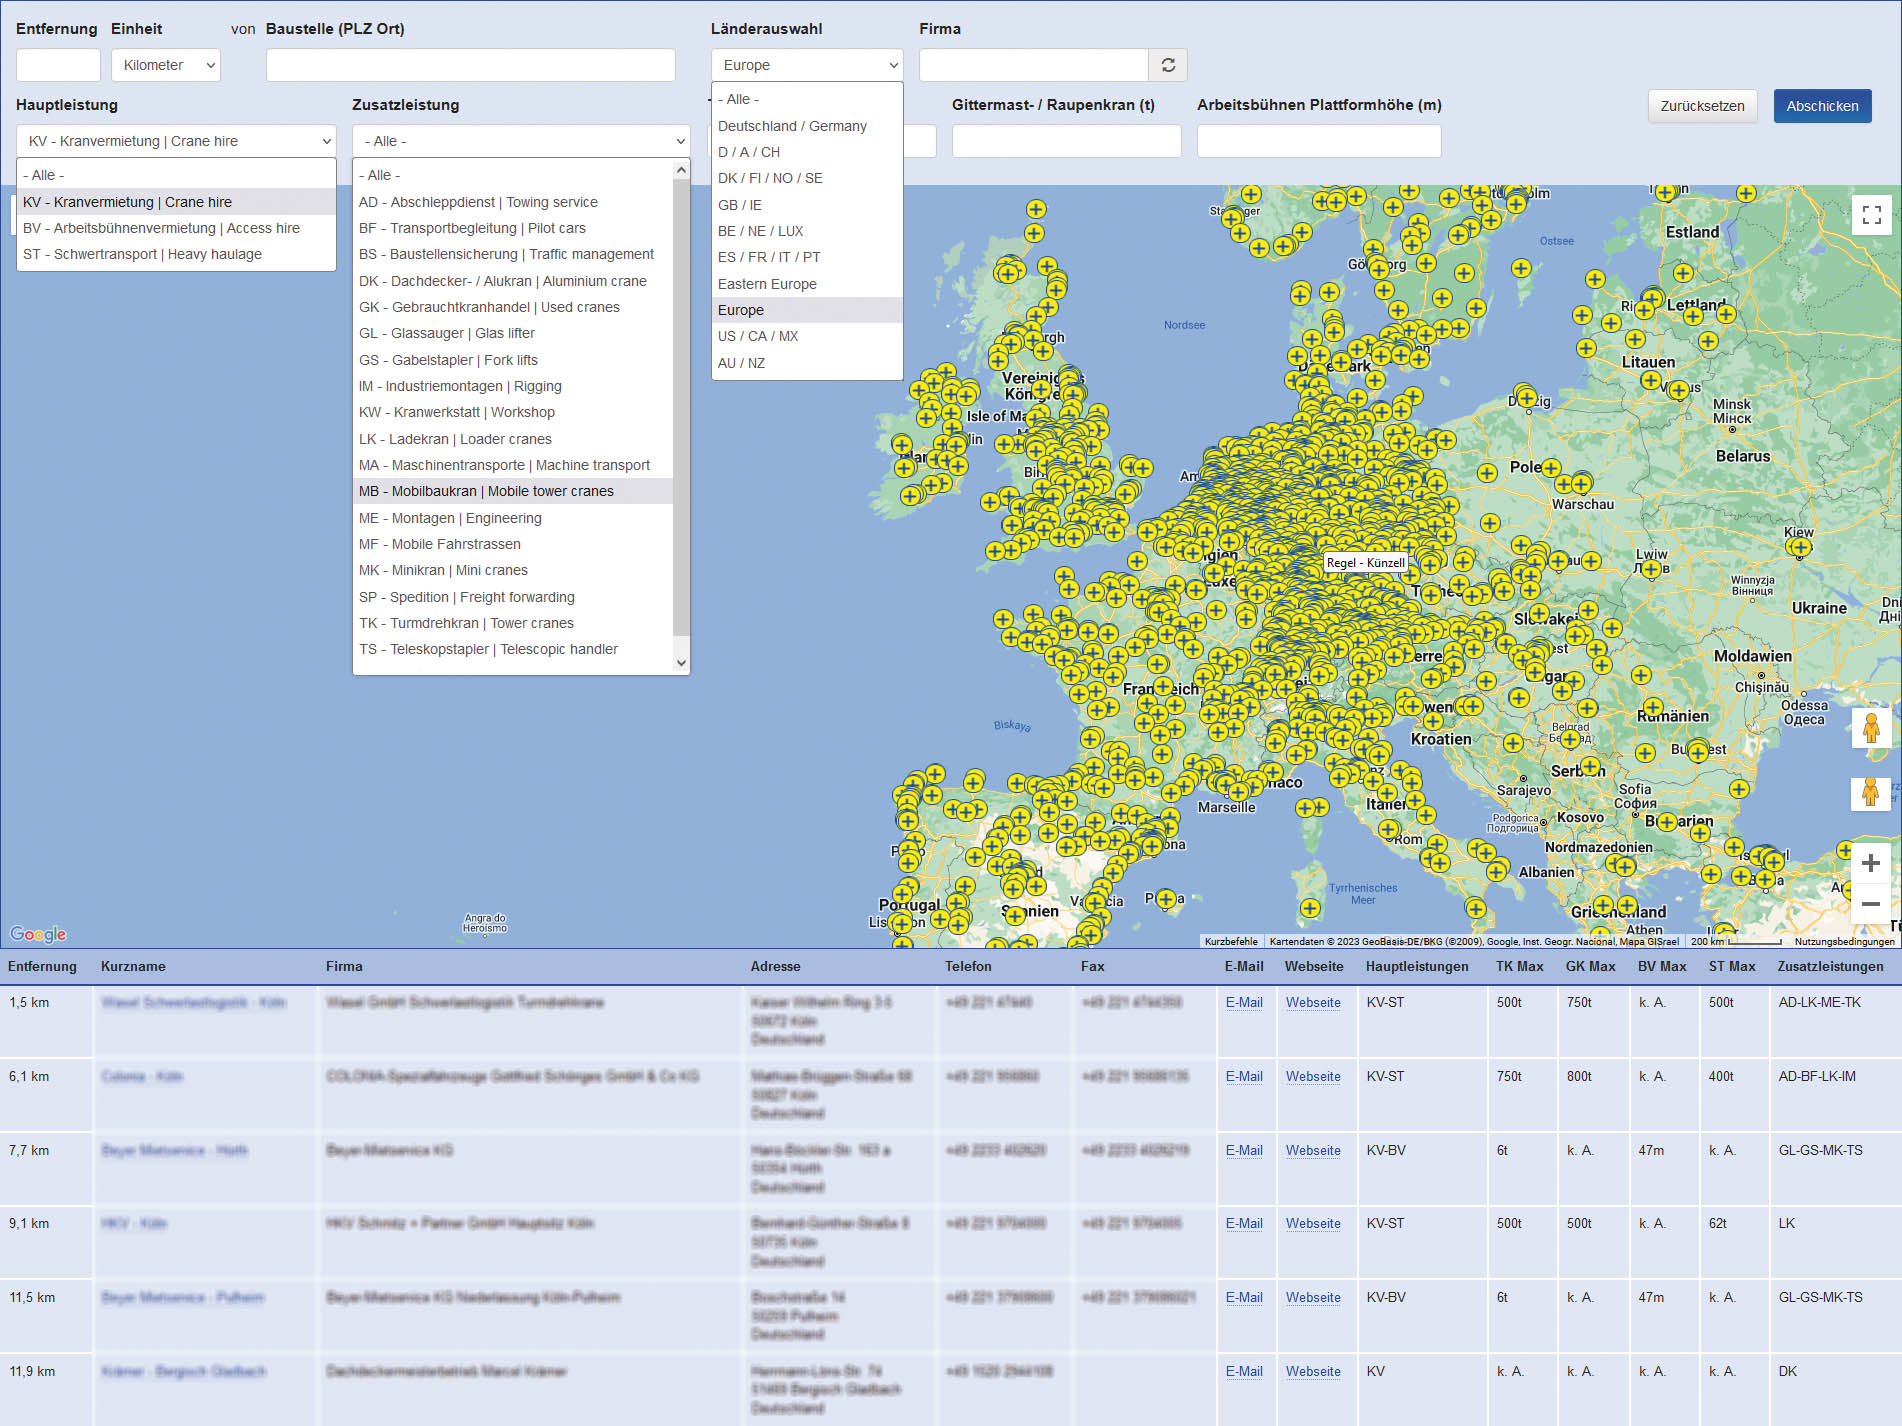 Vermieter-Map: Die Online-Karte für Kranvermietung, Arbeitsbühnenvermietung und Schwertransport in BENELUX und Europa